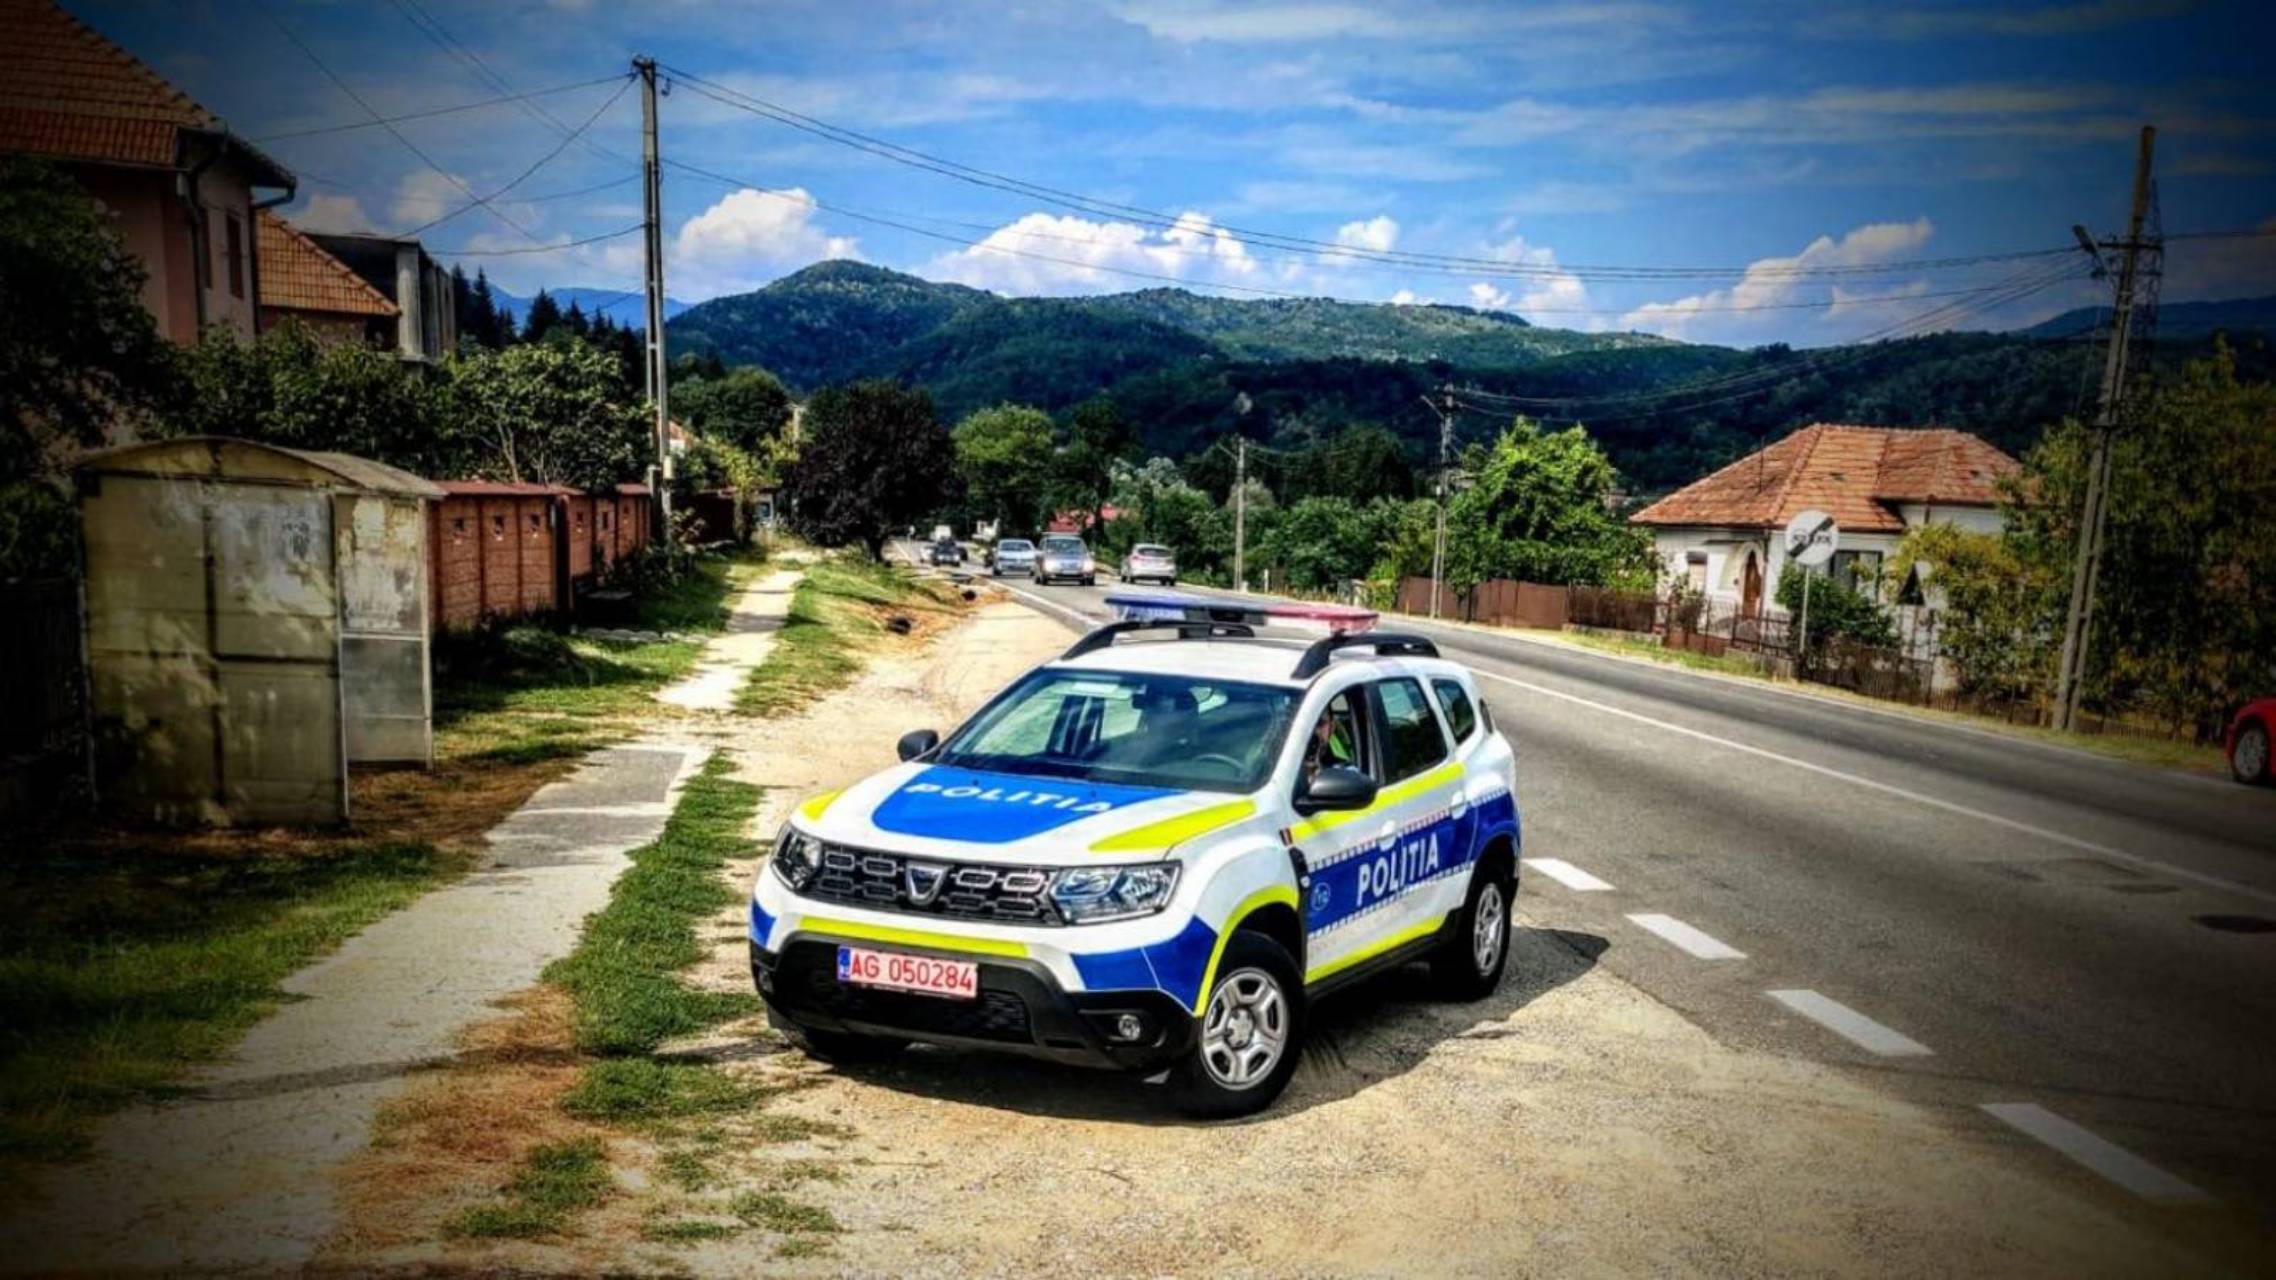 La policía rumana realiza controles frecuentes